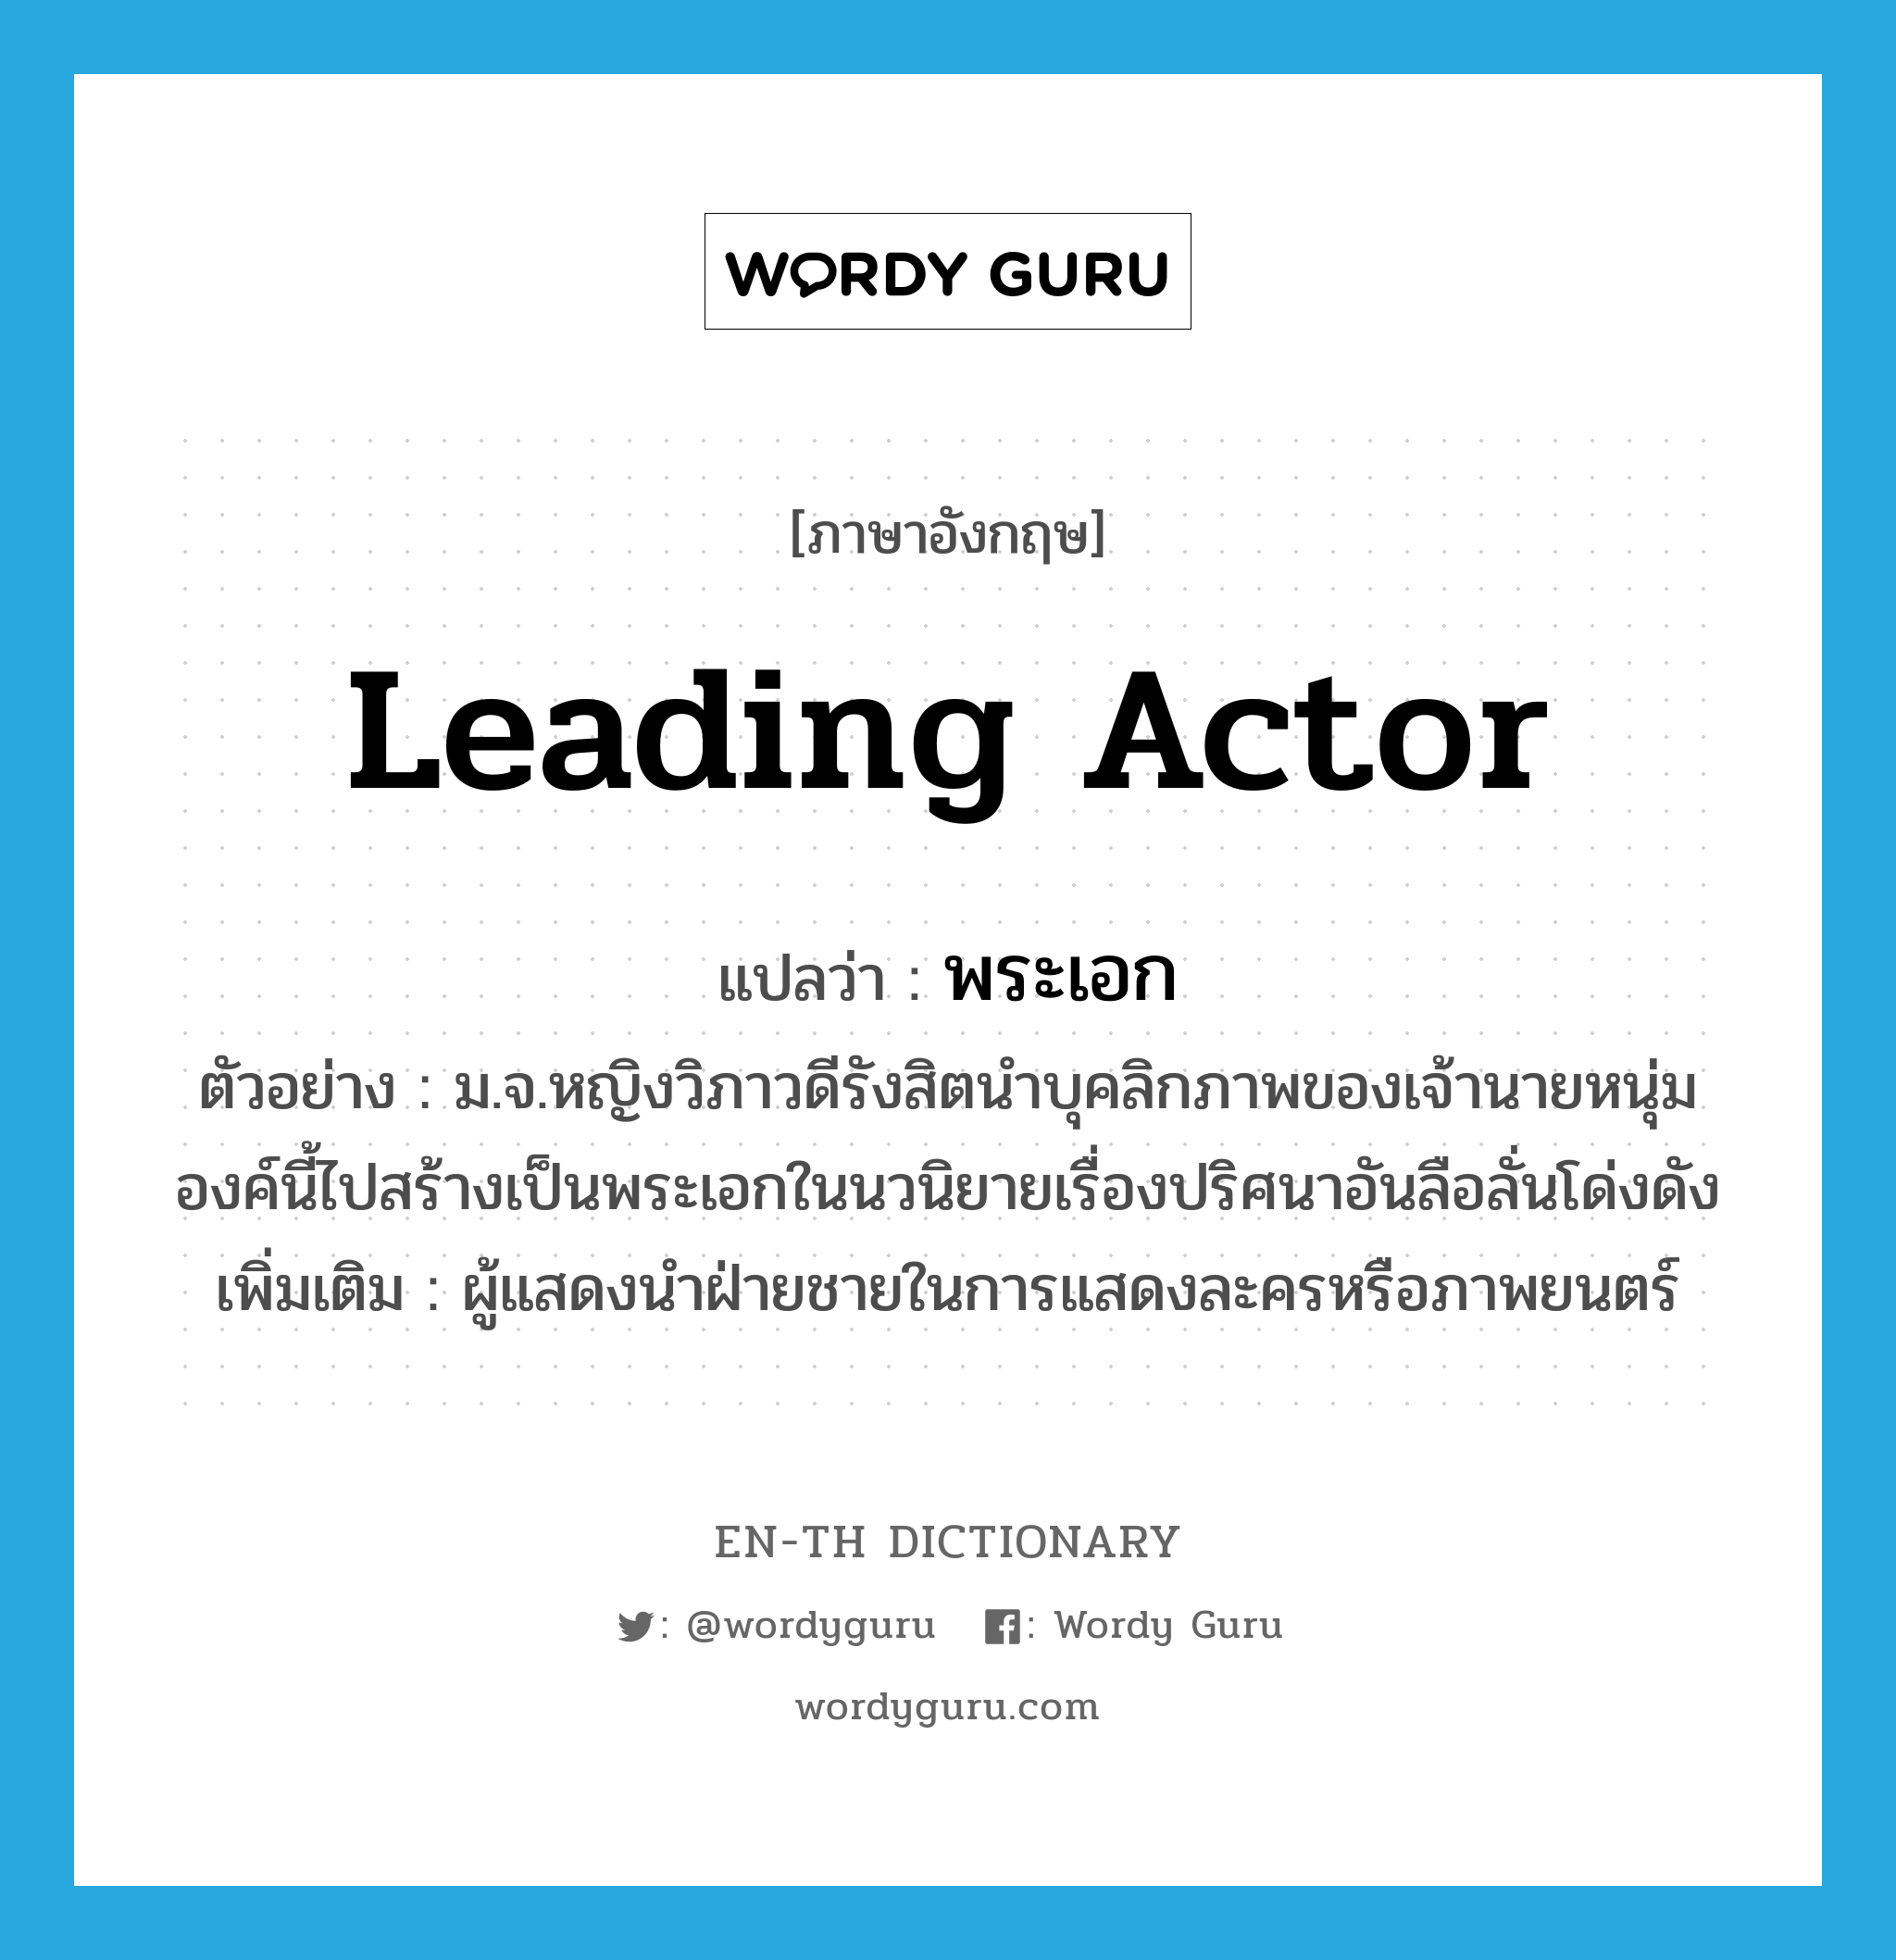 leading actor แปลว่า?, คำศัพท์ภาษาอังกฤษ leading actor แปลว่า พระเอก ประเภท N ตัวอย่าง ม.จ.หญิงวิภาวดีรังสิตนำบุคลิกภาพของเจ้านายหนุ่มองค์นี้ไปสร้างเป็นพระเอกในนวนิยายเรื่องปริศนาอันลือลั่นโด่งดัง เพิ่มเติม ผู้แสดงนำฝ่ายชายในการแสดงละครหรือภาพยนตร์ หมวด N